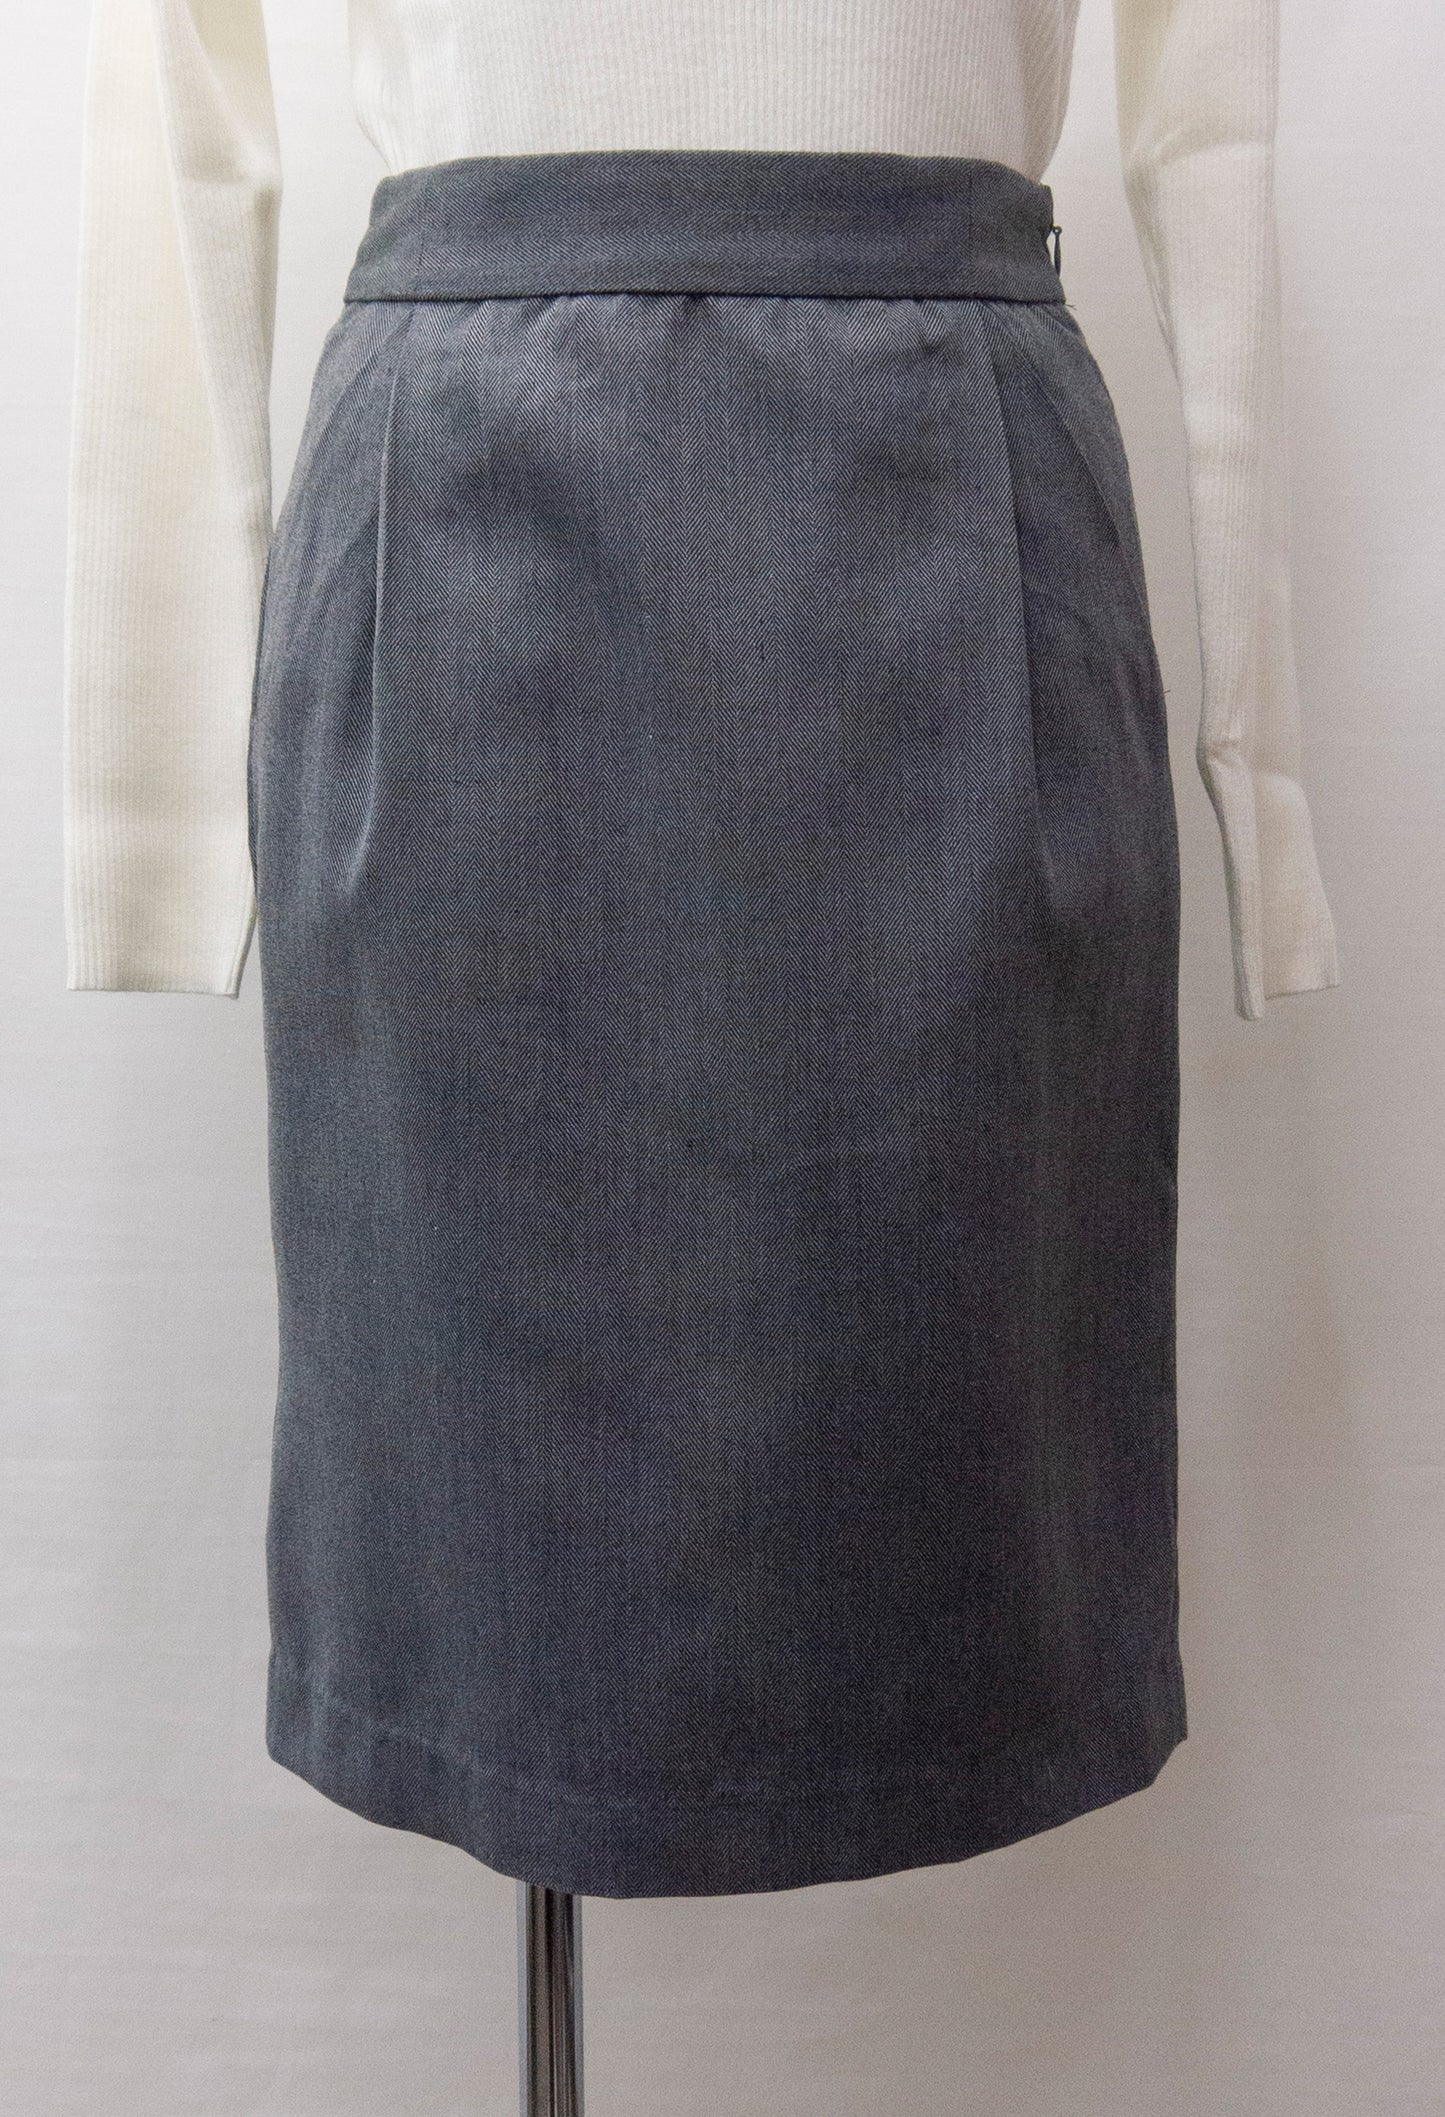 へリンボーンタイトスカート(681-1732)